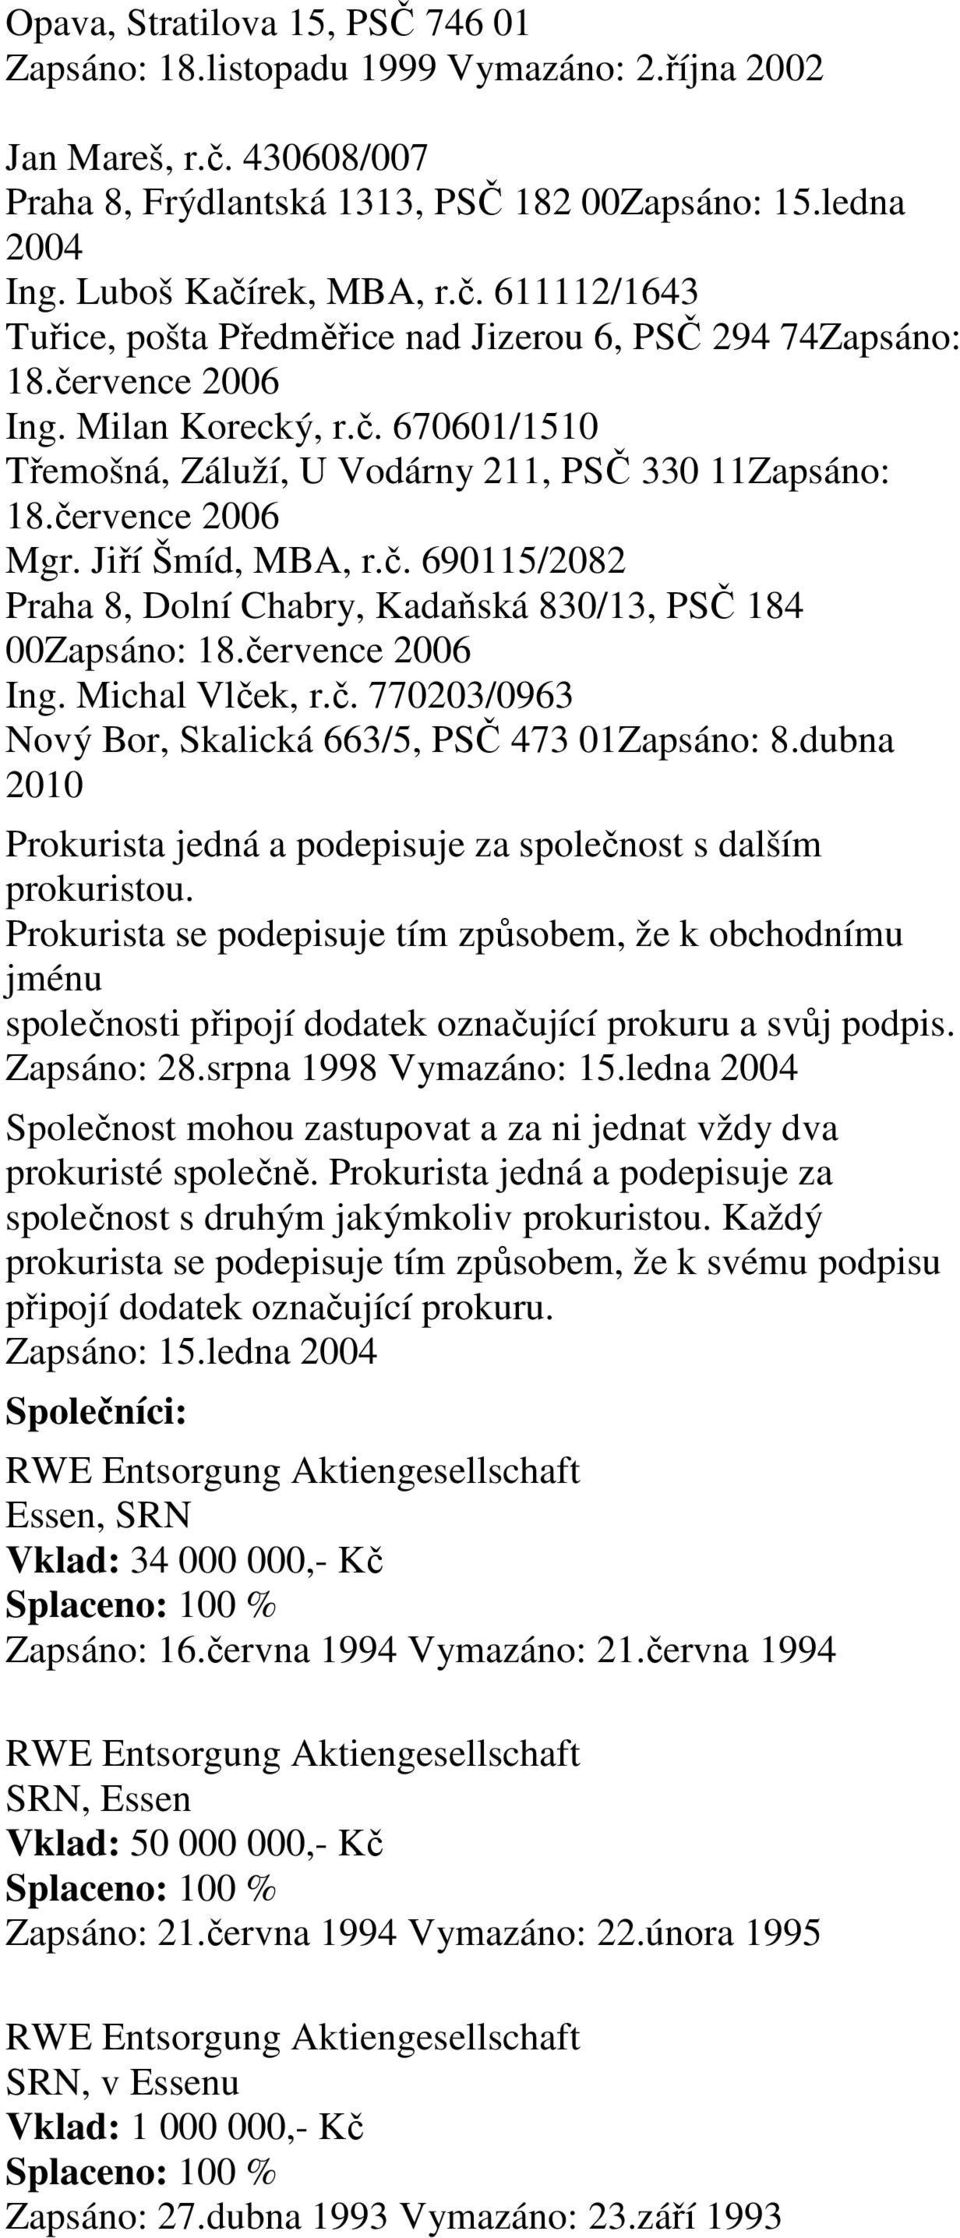 července 2006 Ing. Michal Vlček, r.č. 770203/0963 Nový Bor, Skalická 663/5, PSČ 473 01Zapsáno: 8.dubna 2010 Prokurista jedná a podepisuje za společnost s dalším prokuristou.